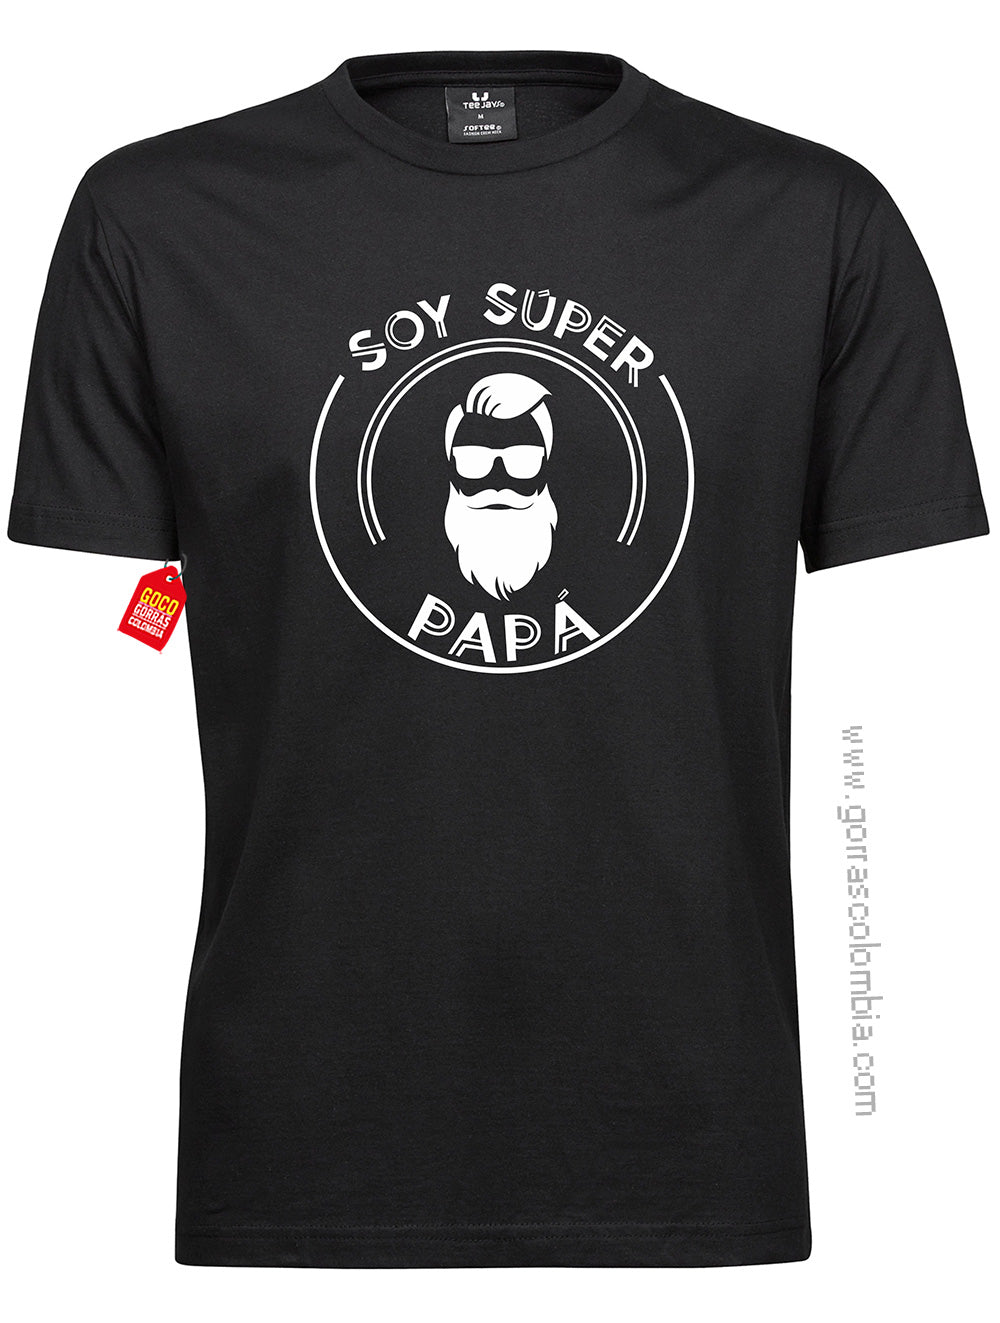 Camiseta SOY SUPER PAPÁ